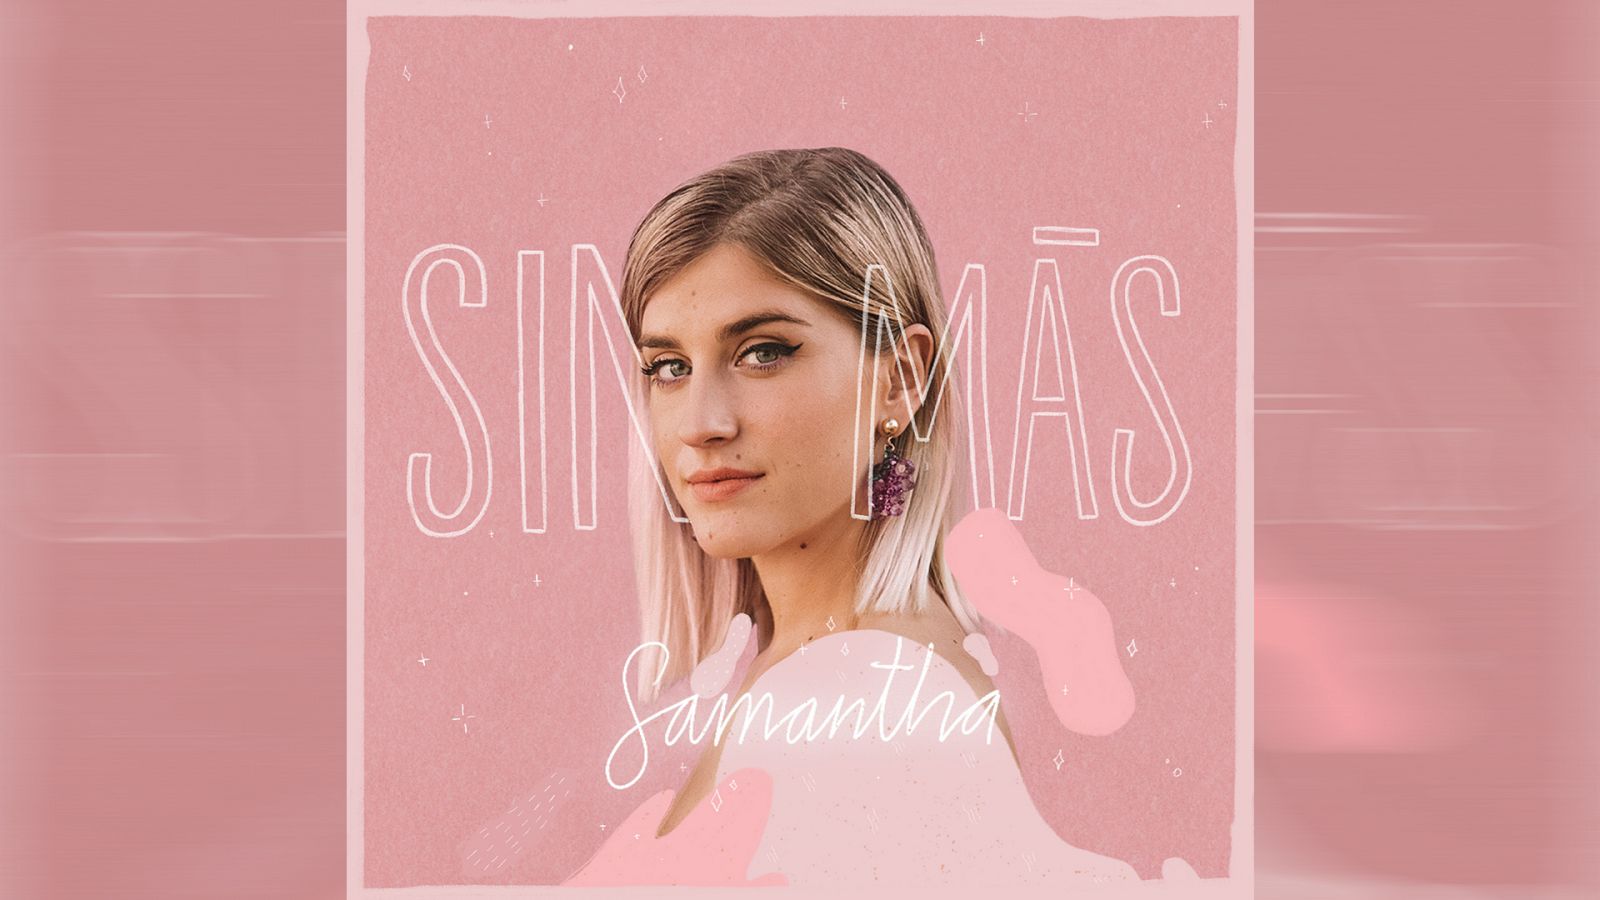 Portada de "Sin más", el primer single de Samantha